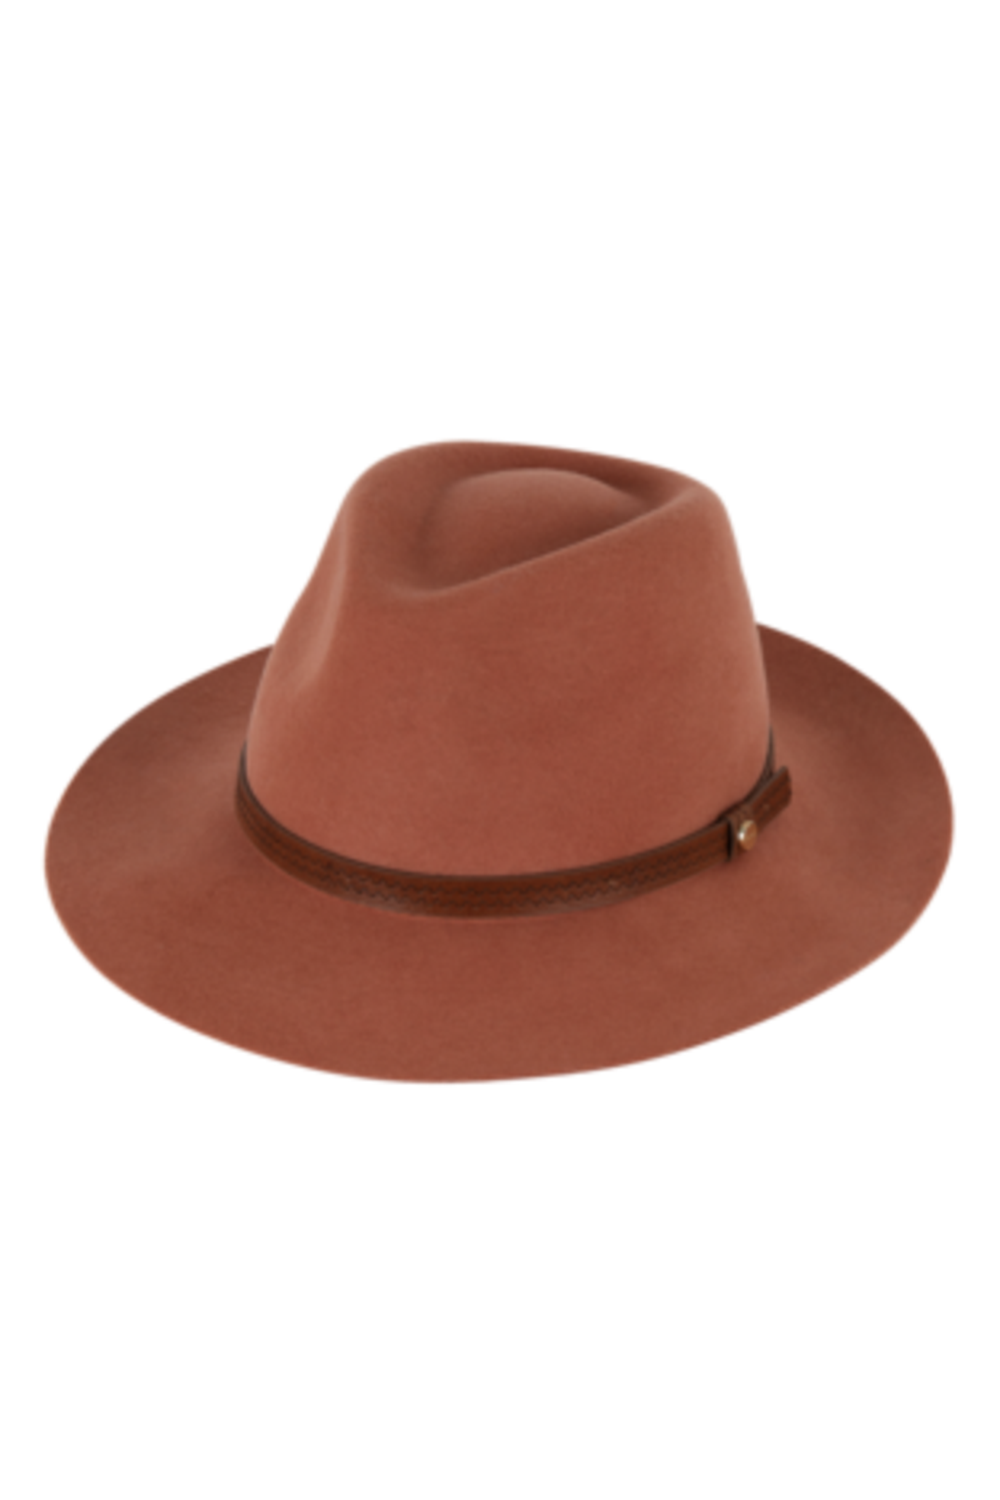 SIDEWALK SALE ITEM - Ladies Safari Hat - Kallie Terracotta